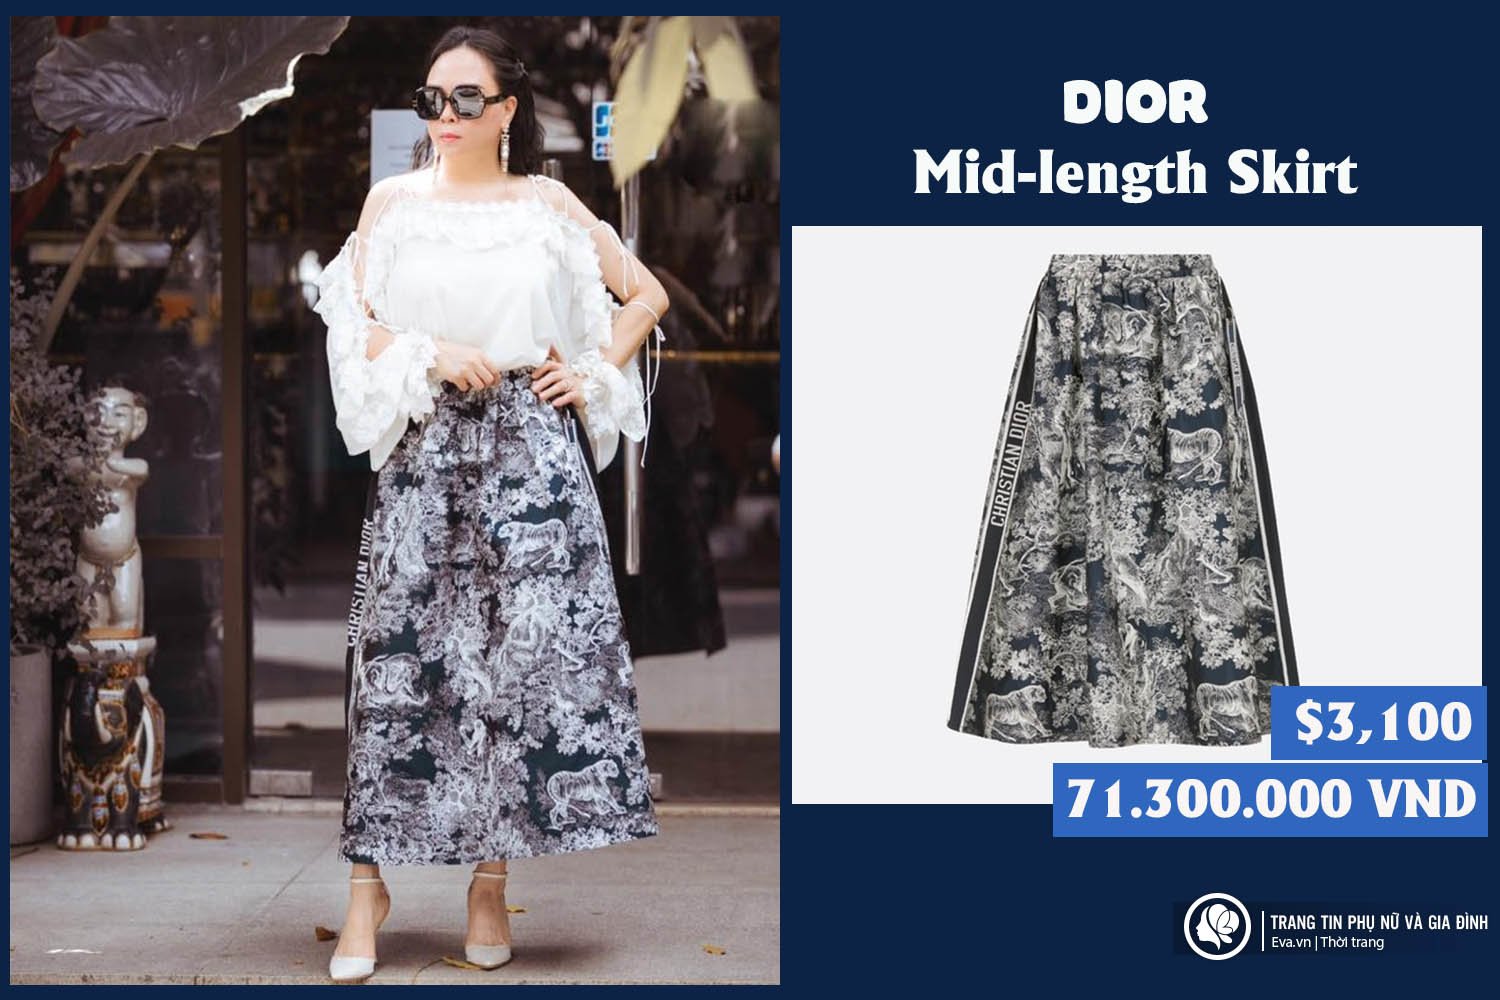 Dior bị tố “đạo nhái” trang phục truyền thống Trung Quốc